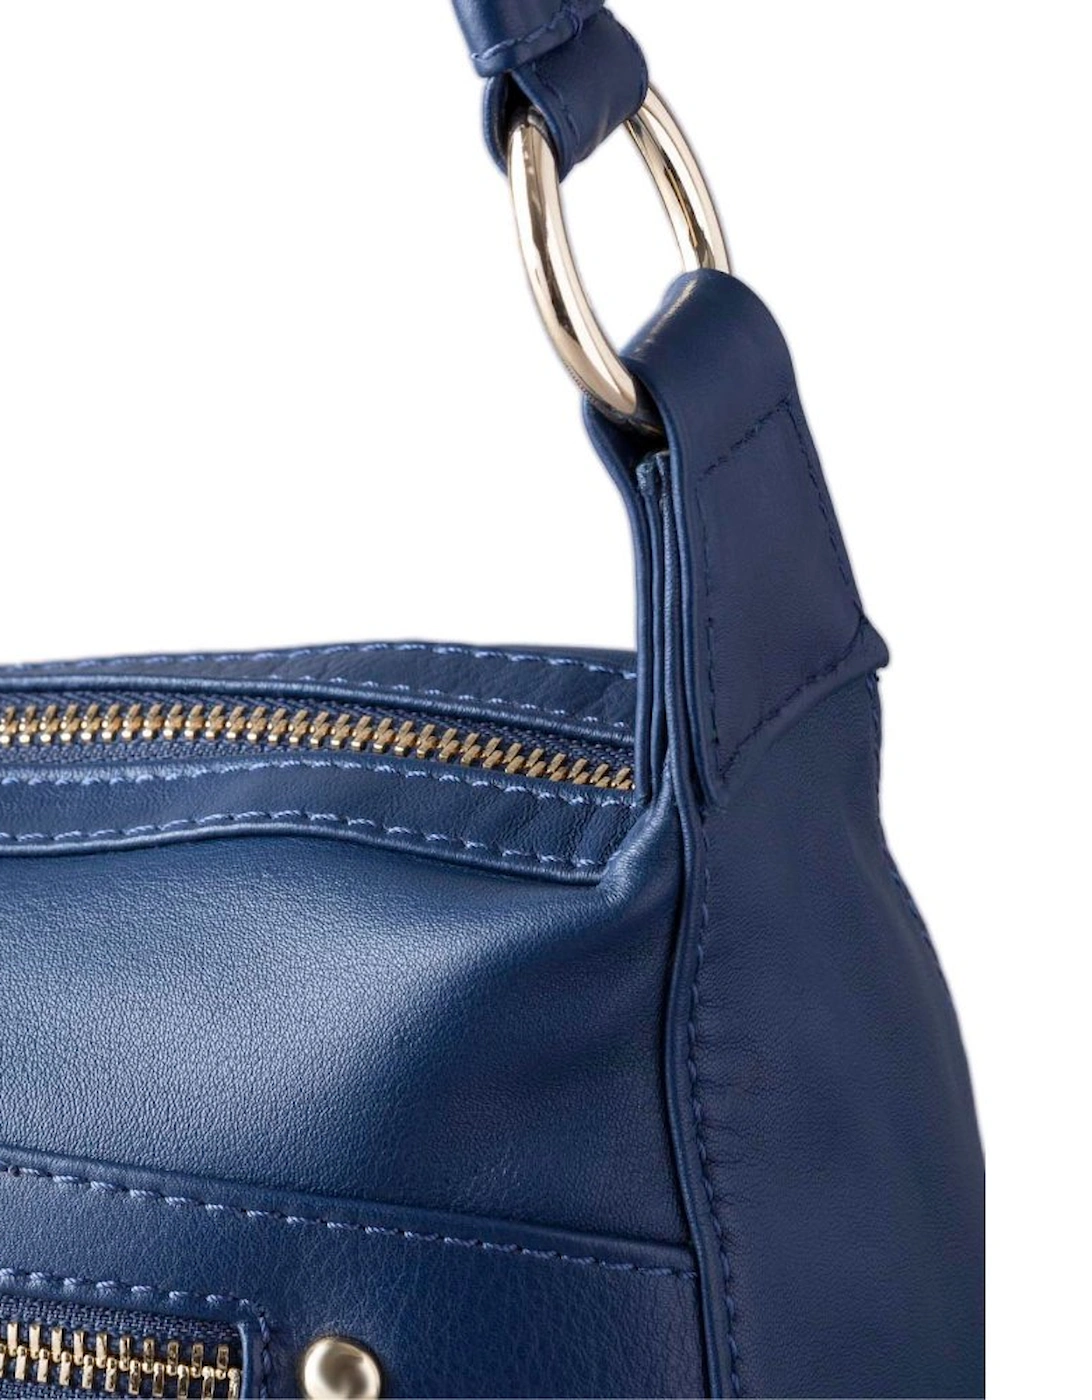 Cartmell II Leather Shoulder Bag